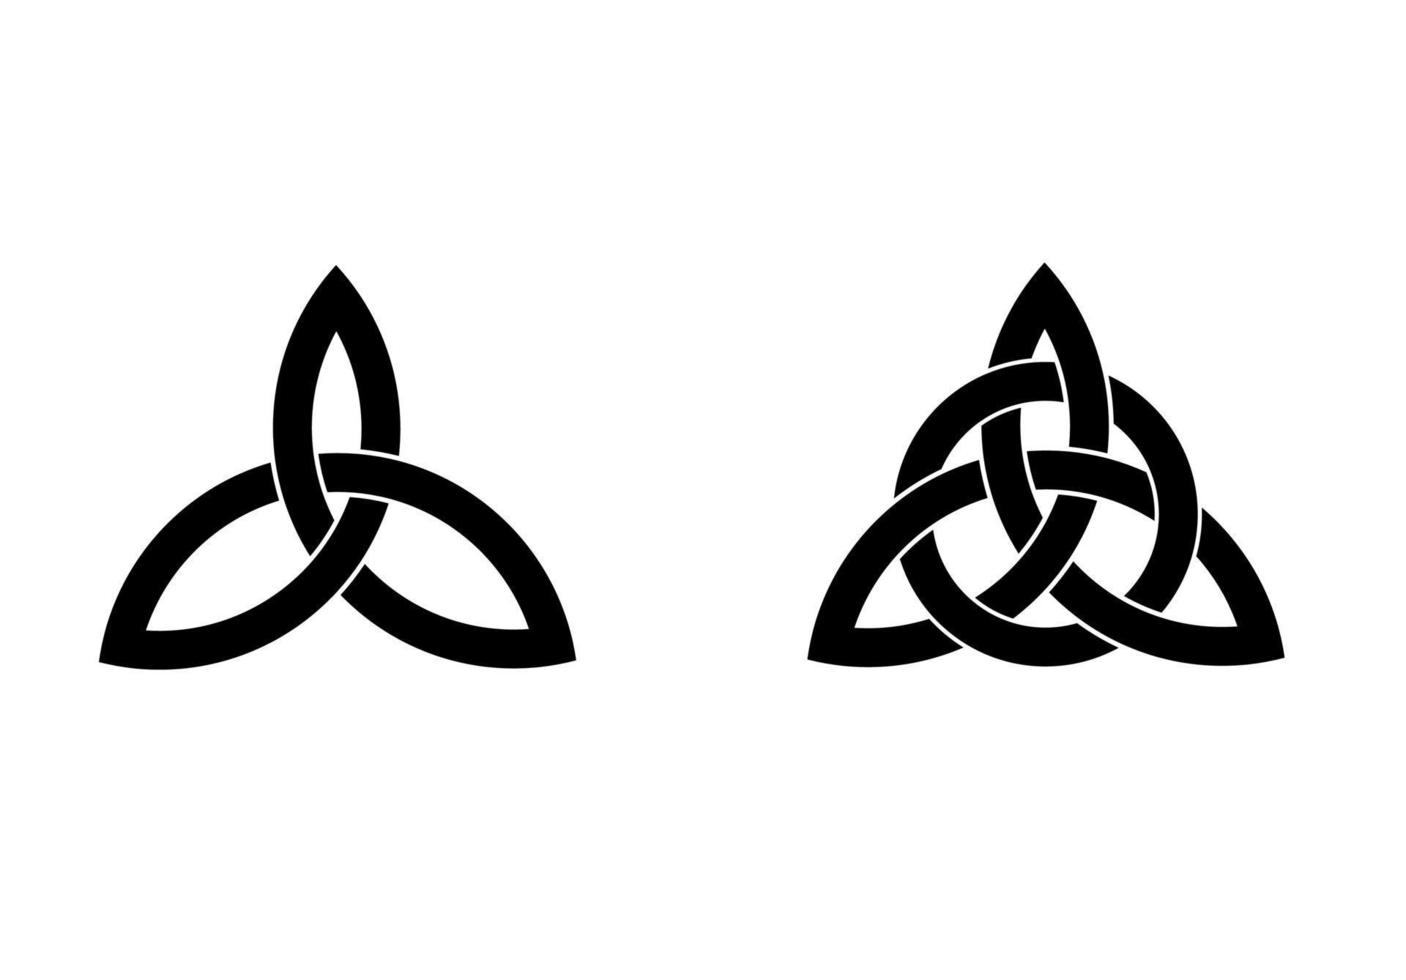 triquerta sign.triquetra im Kreis Trikvetr-Knotenform Symbolsatz für Dreifaltigkeitsknoten vektor